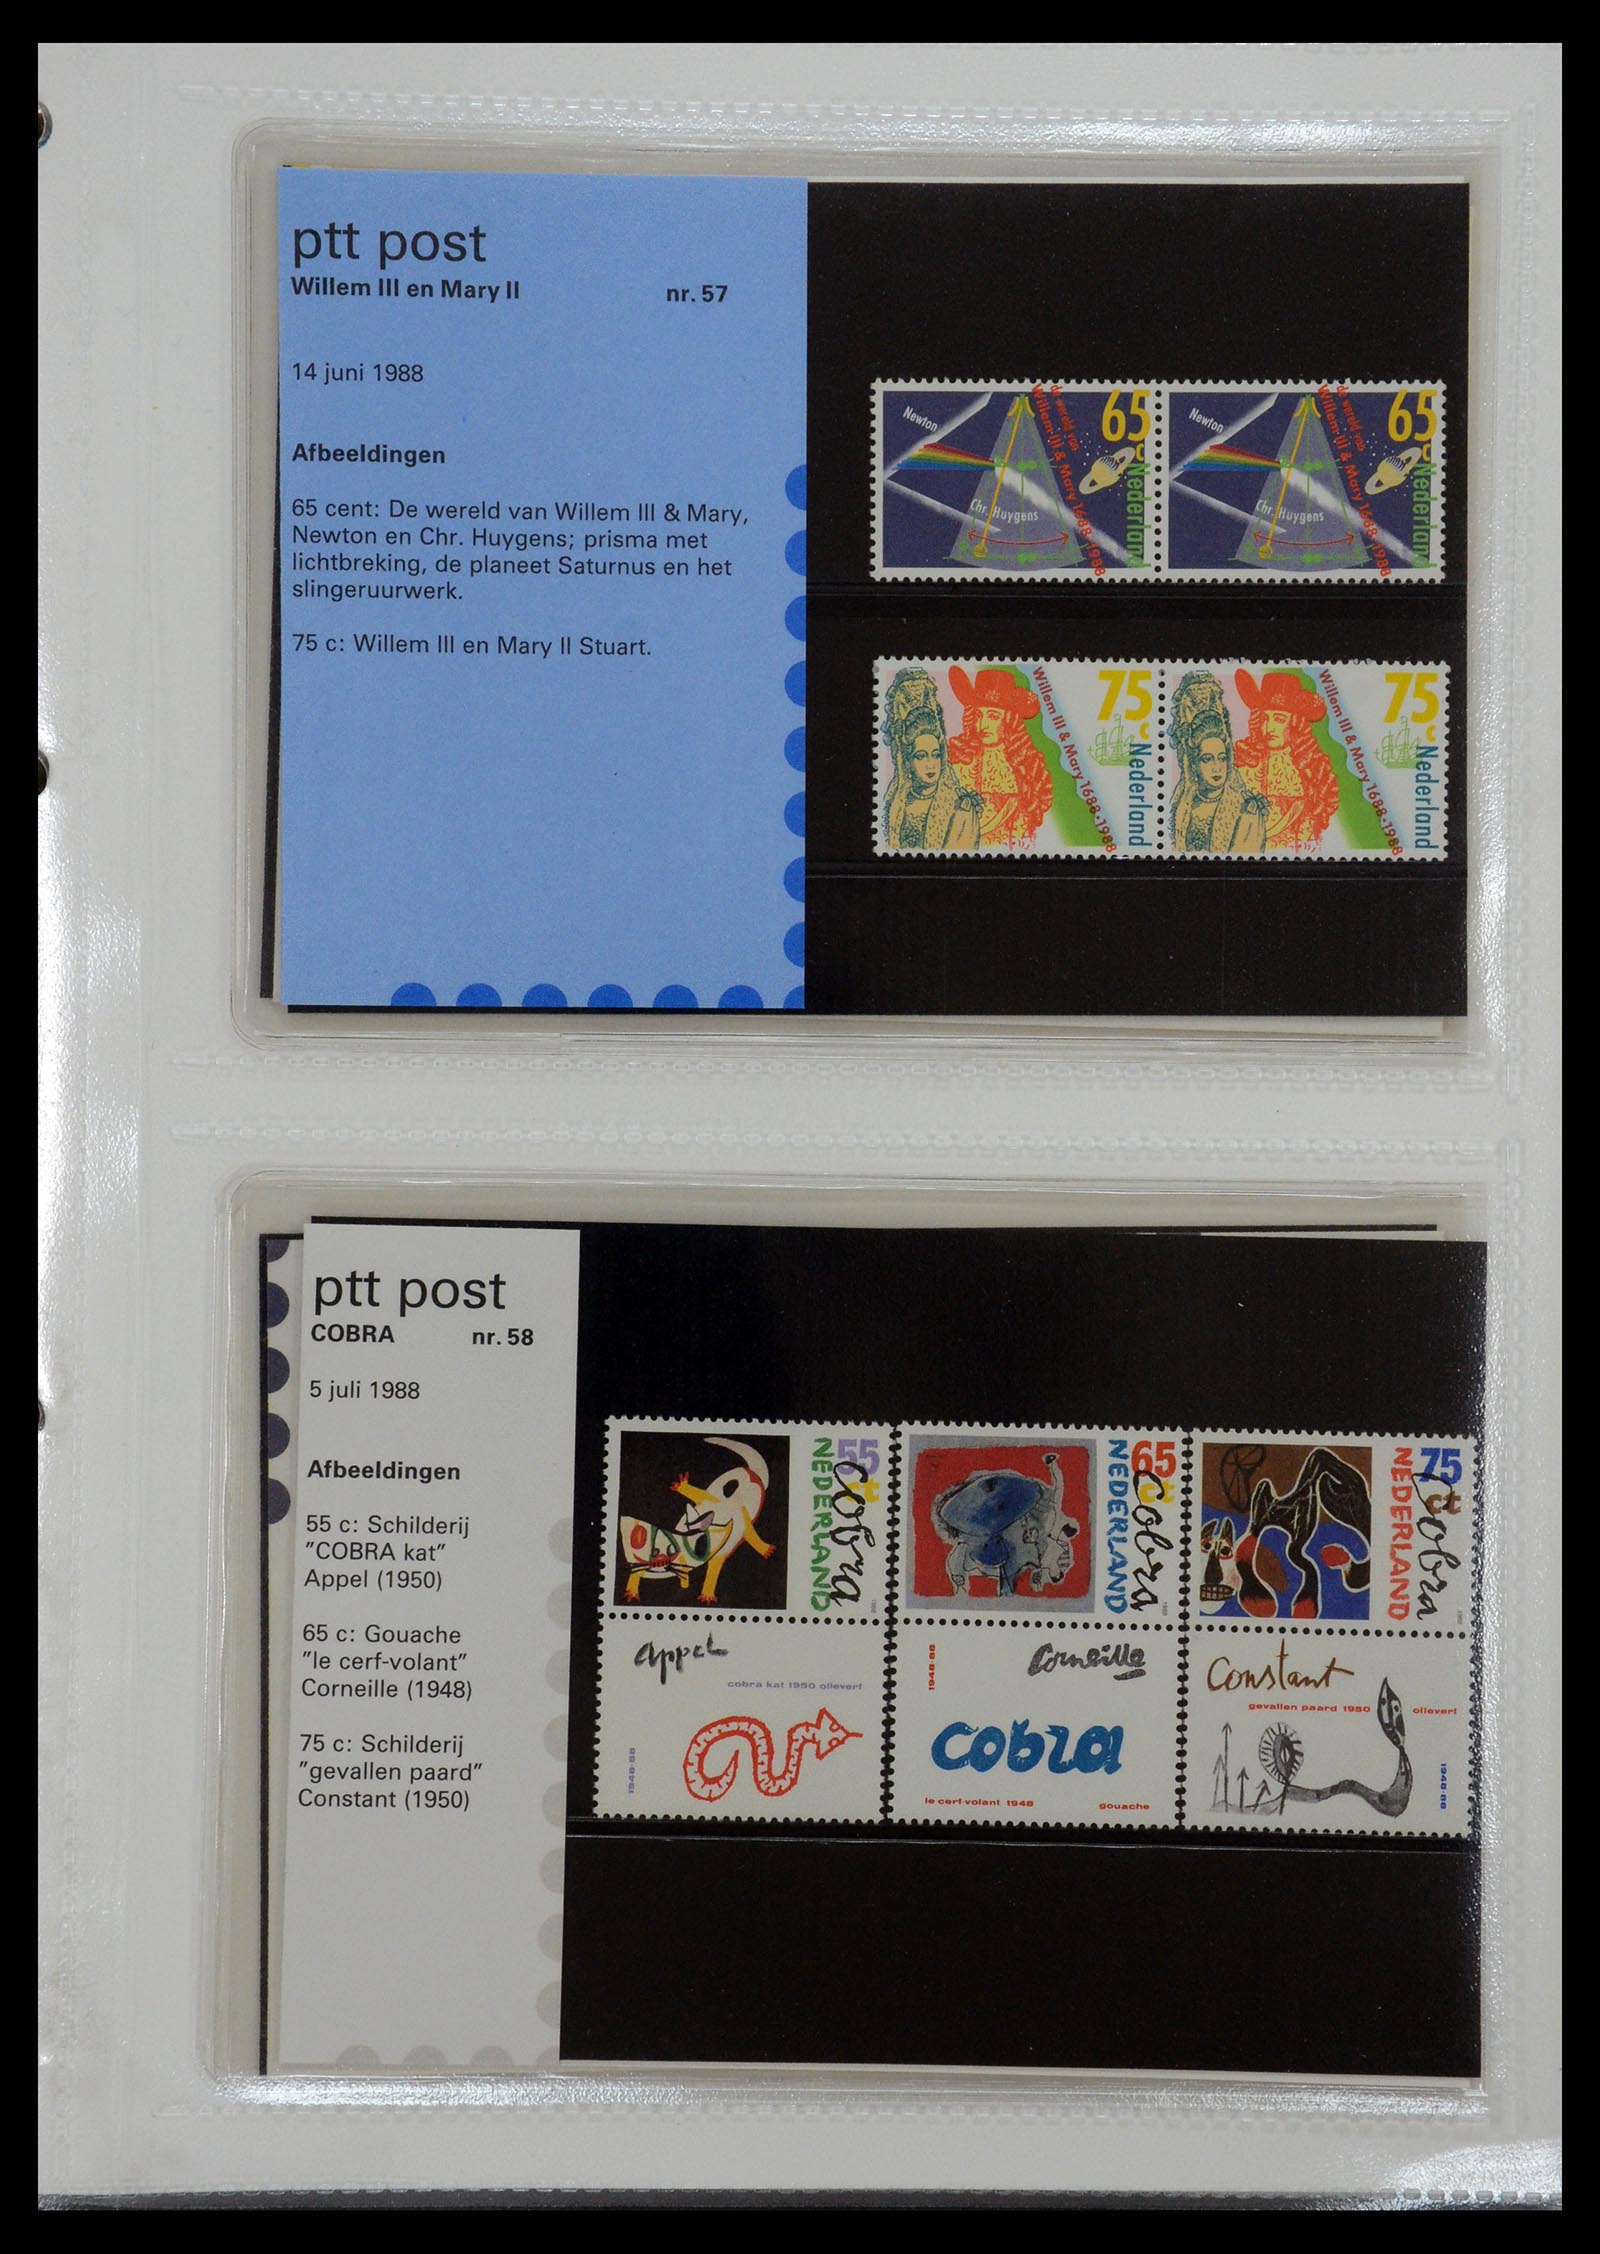 35144 029 - Stamp Collection 35144 Netherlands PTT presentation packs 1982-2021!